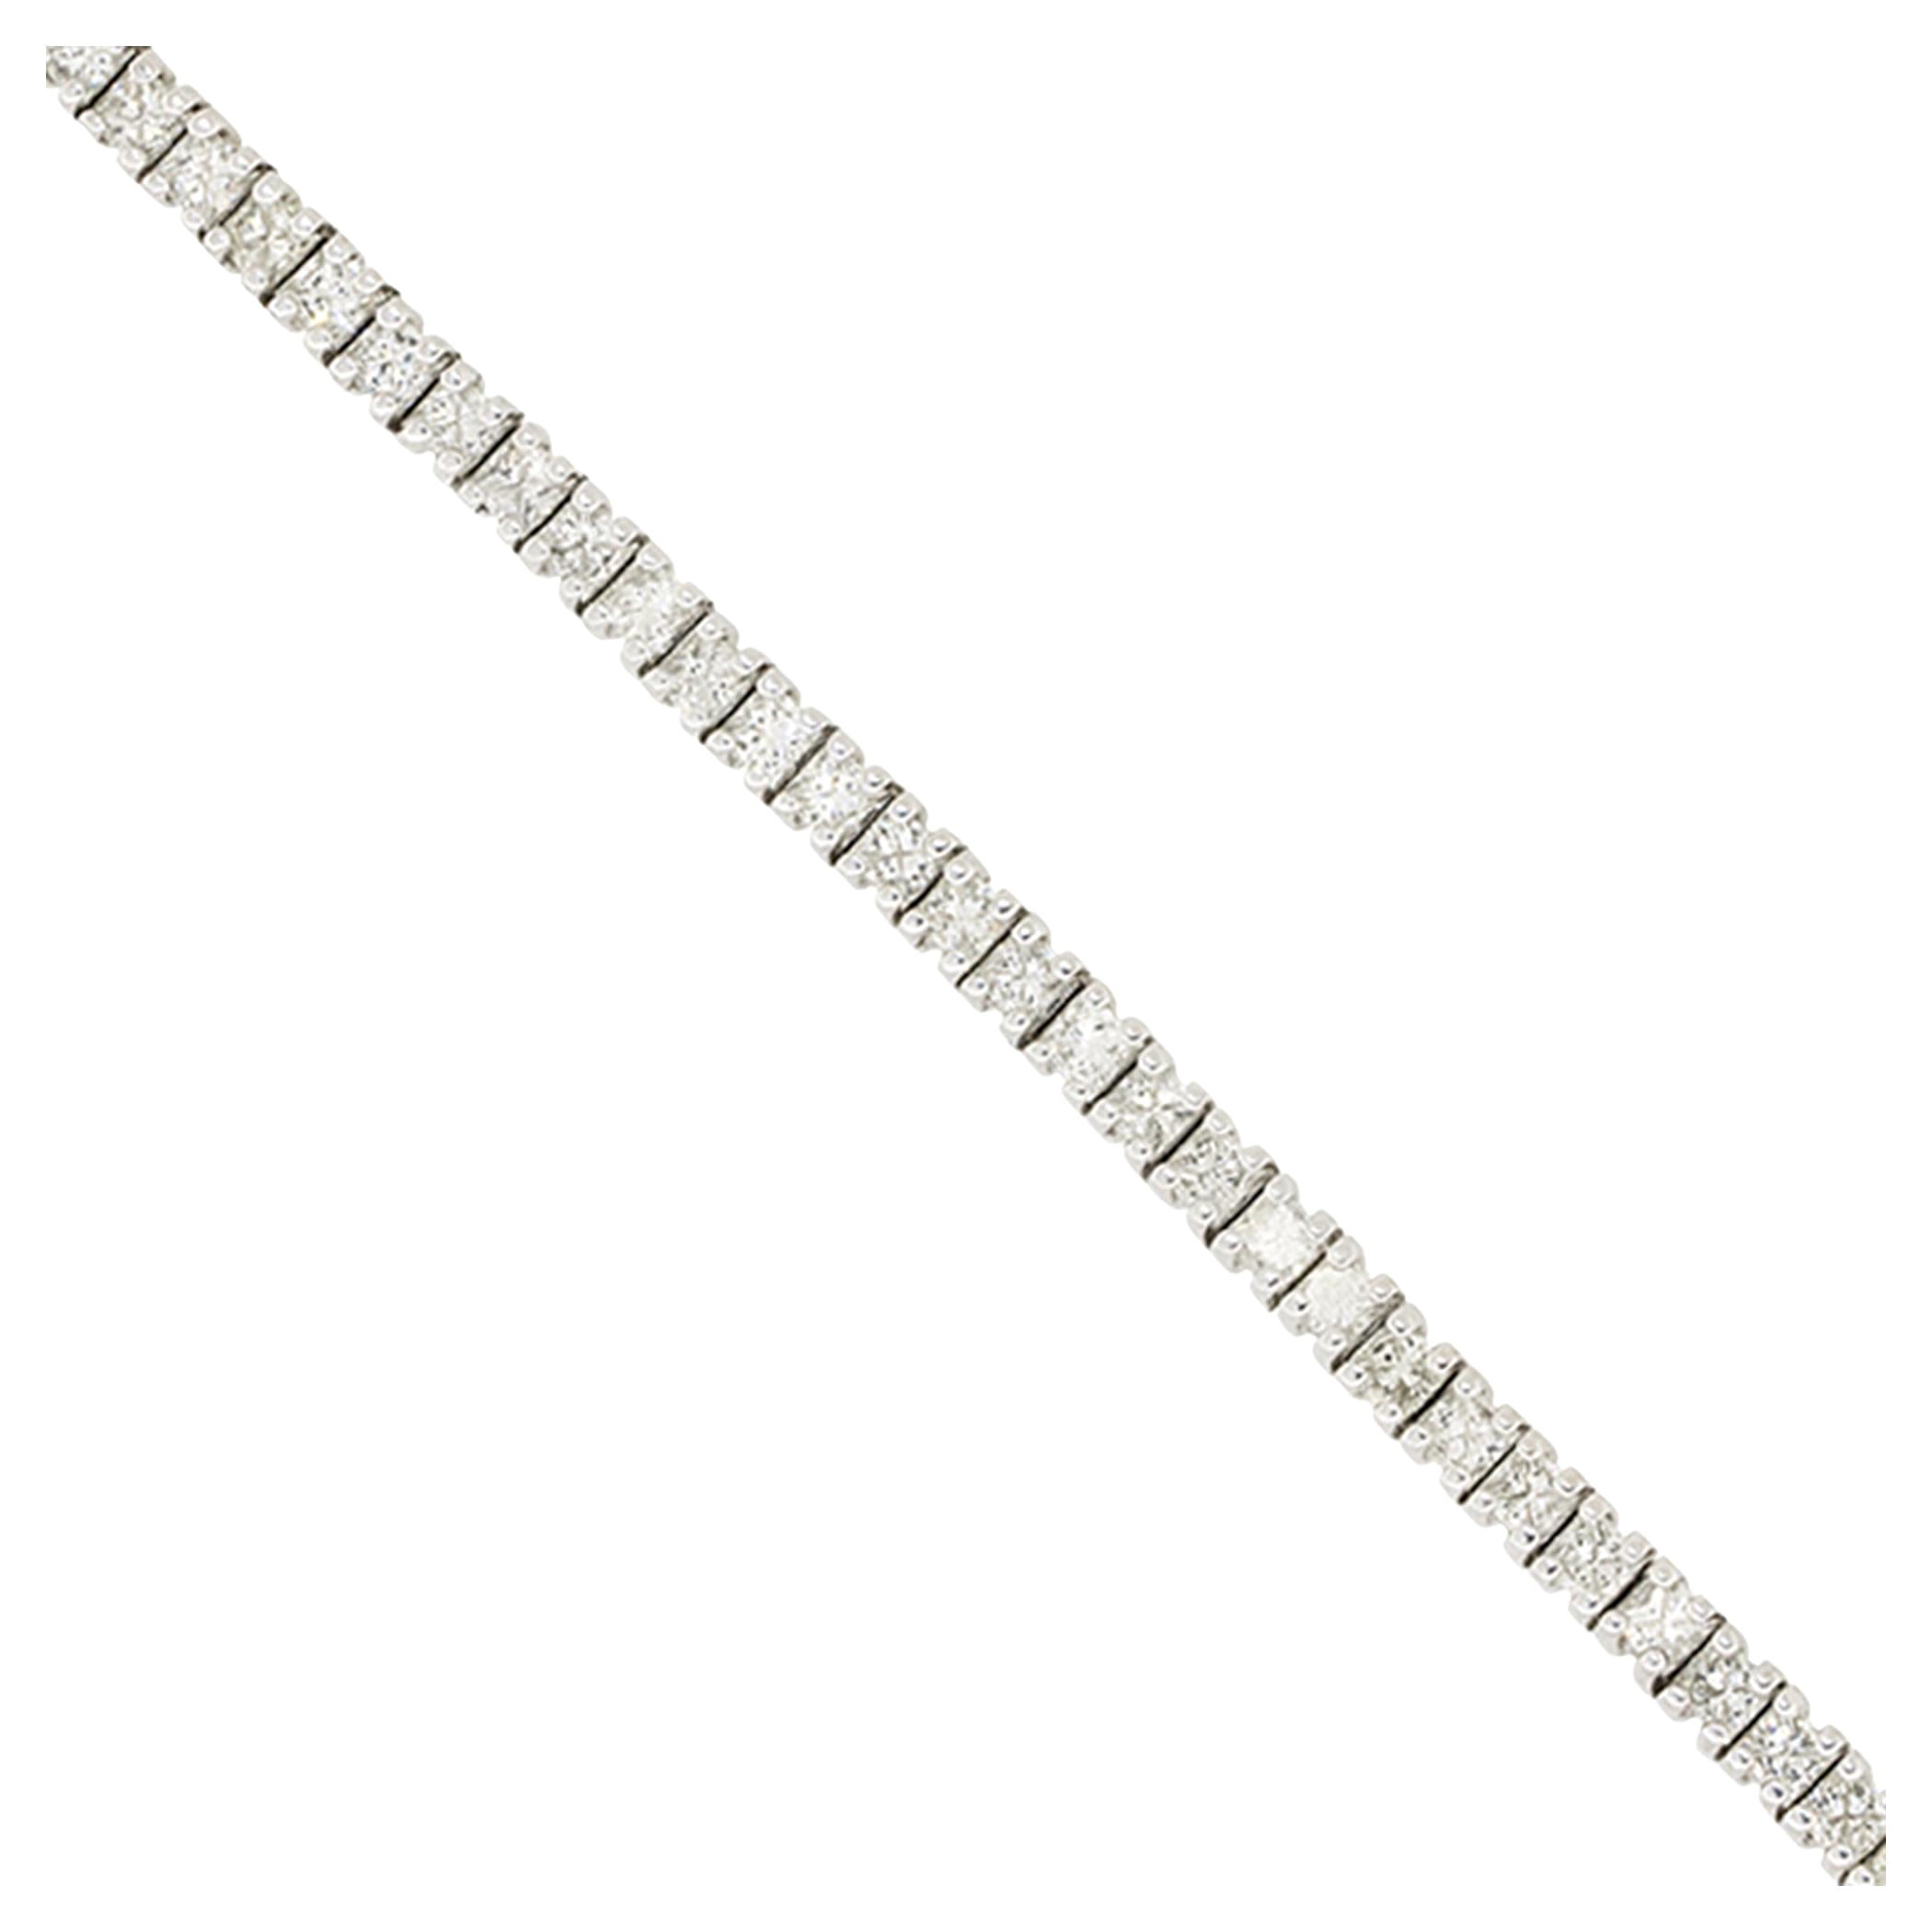 14k White Gold 5.20ctw Princess Cut Diamond Tennis Bracelet